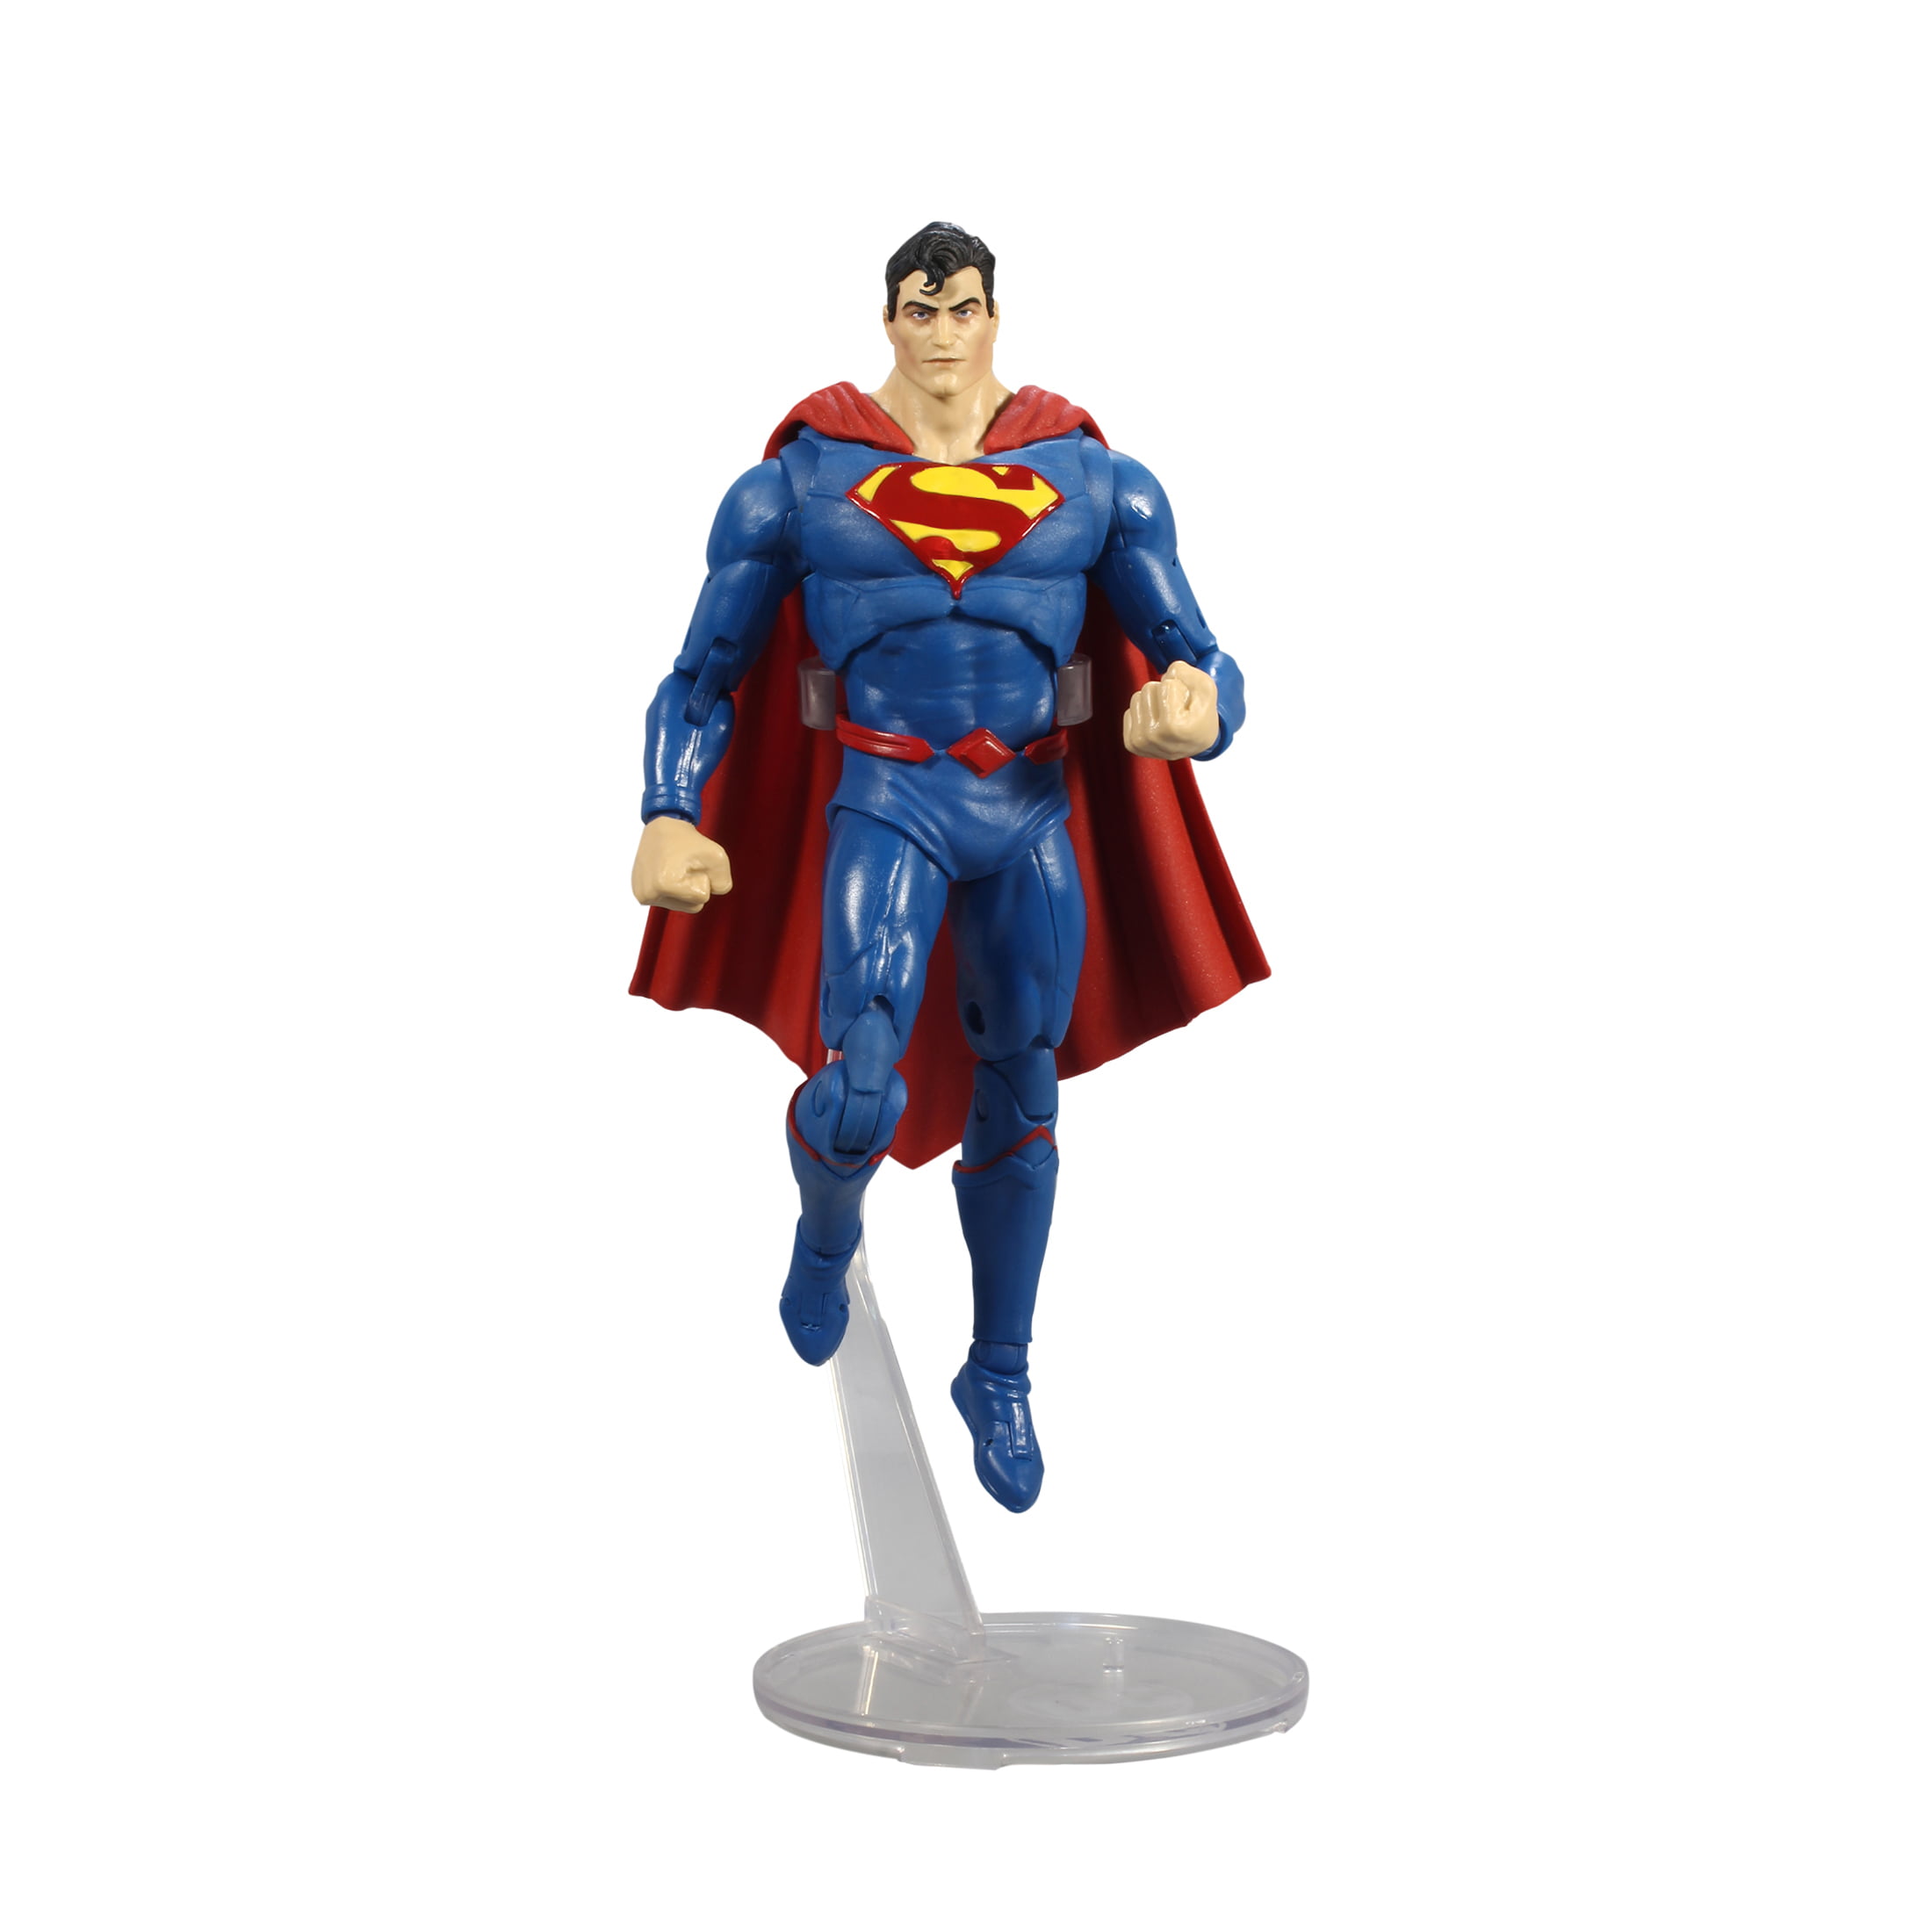 & 6 Collectible Justice League DC Comics Mini Figures by Mattel 3 for sale online